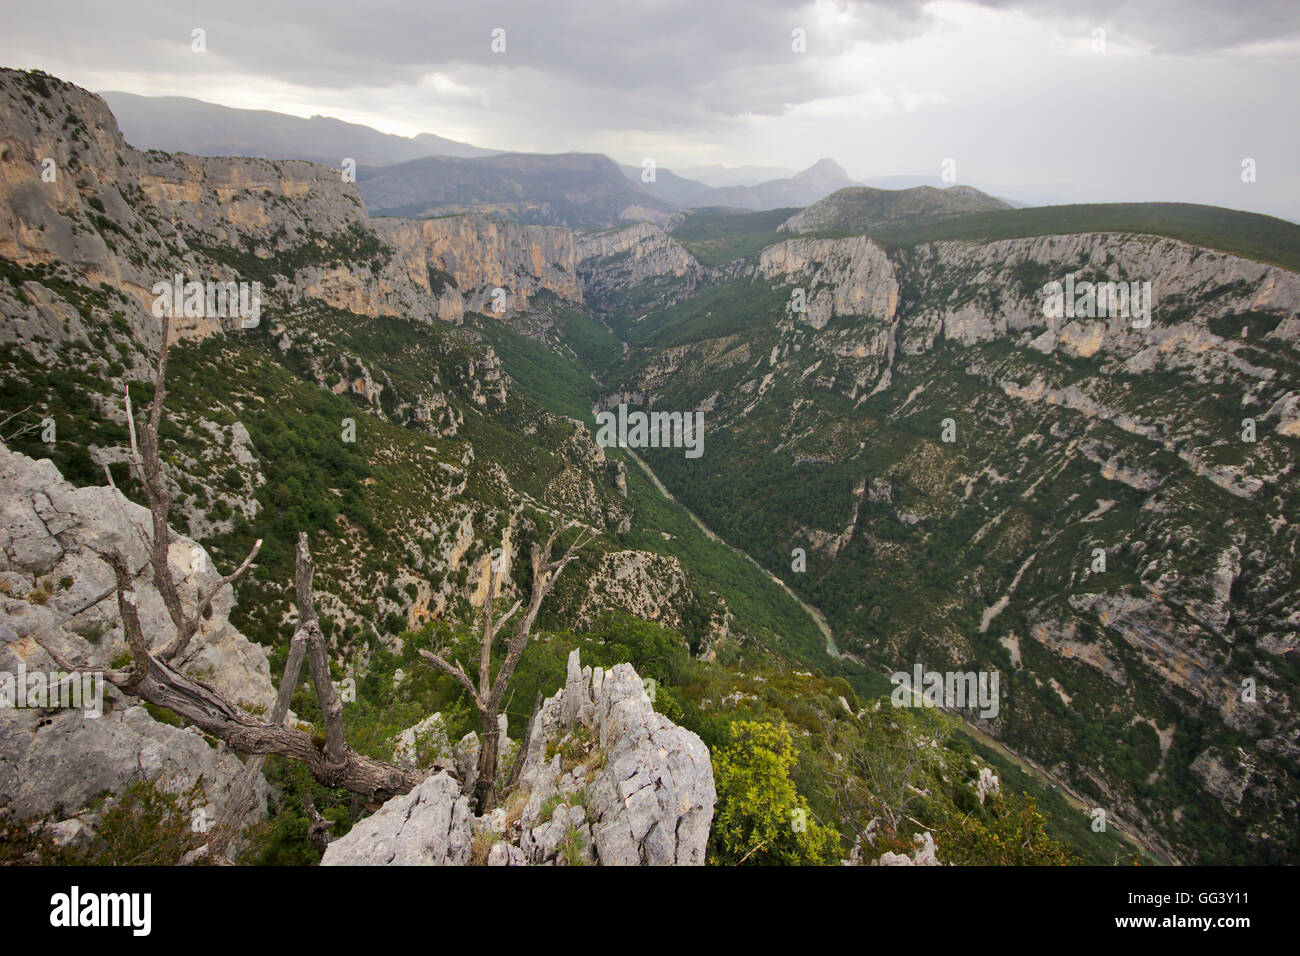 Gorges du Verdon from Belvedere du Tilleul on route des cretes. Provence, France Stock Photo